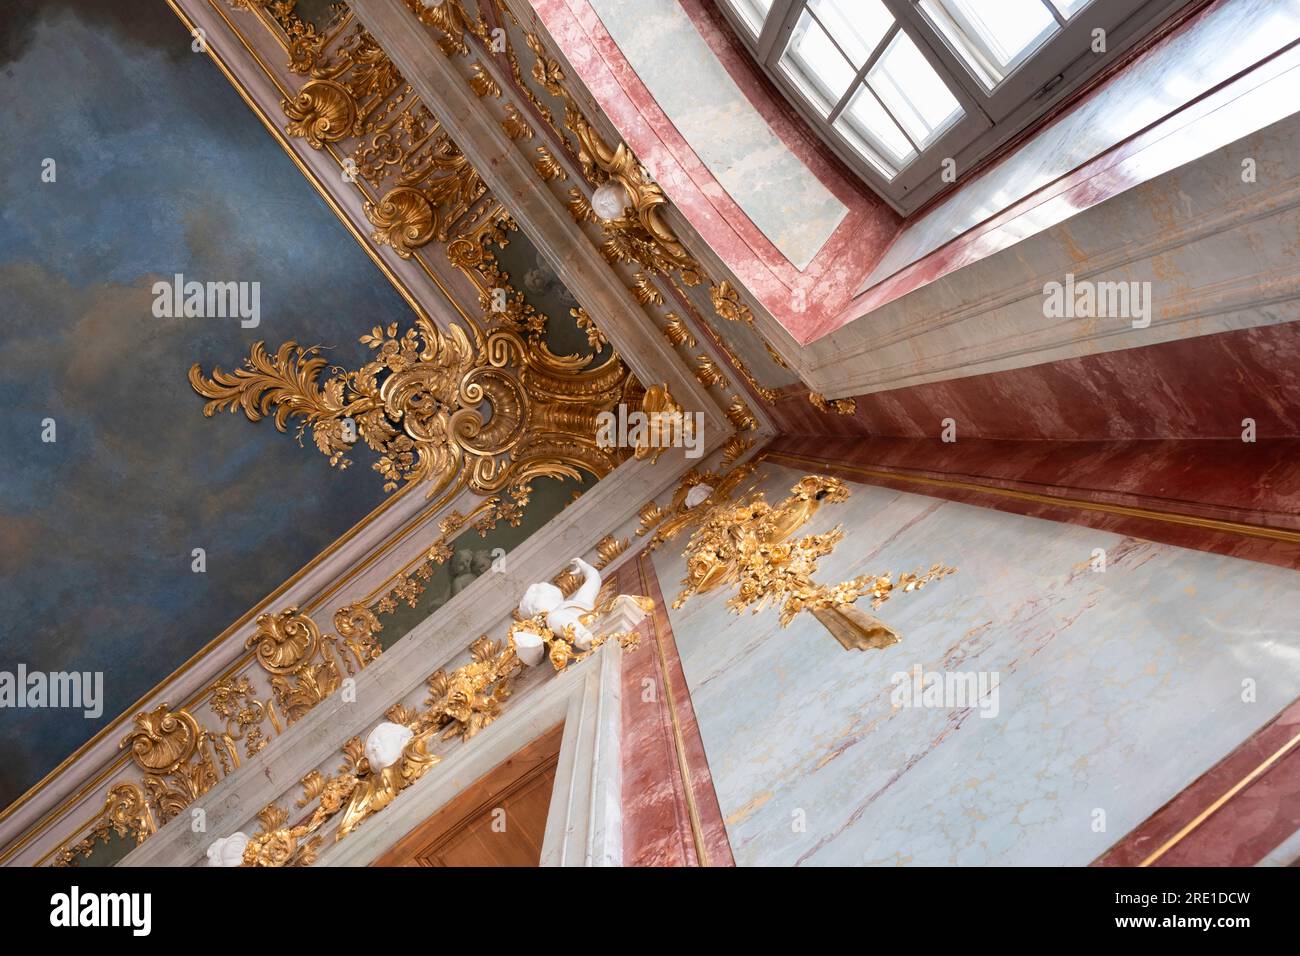 Rundāle intérieur du palais. Détail des ornements richement décorés dans la salle d'or, salle du trône du duc. Décorations en stuc Banque D'Images